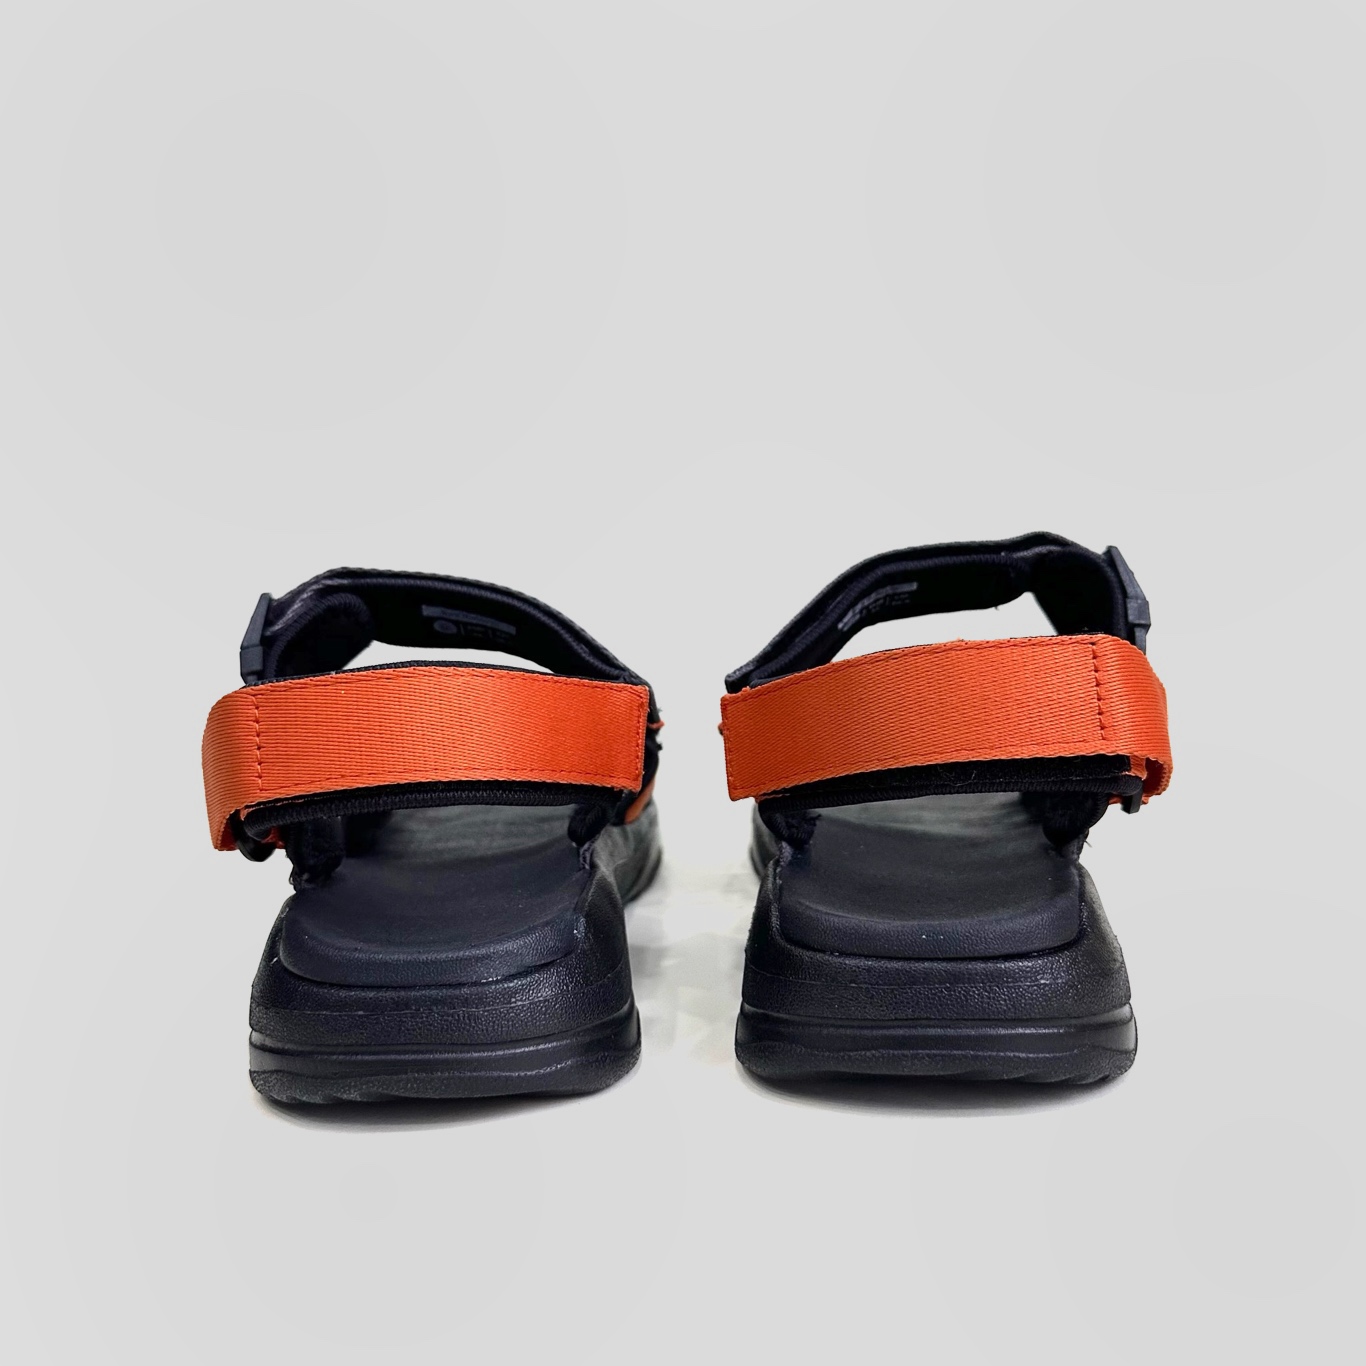 Giày Sandal Nam Nữ Unisex The BiLy Quai Ngang Dây Dù Đế IP Siêu Êm Nhẹ Màu Xám Cam-BL05